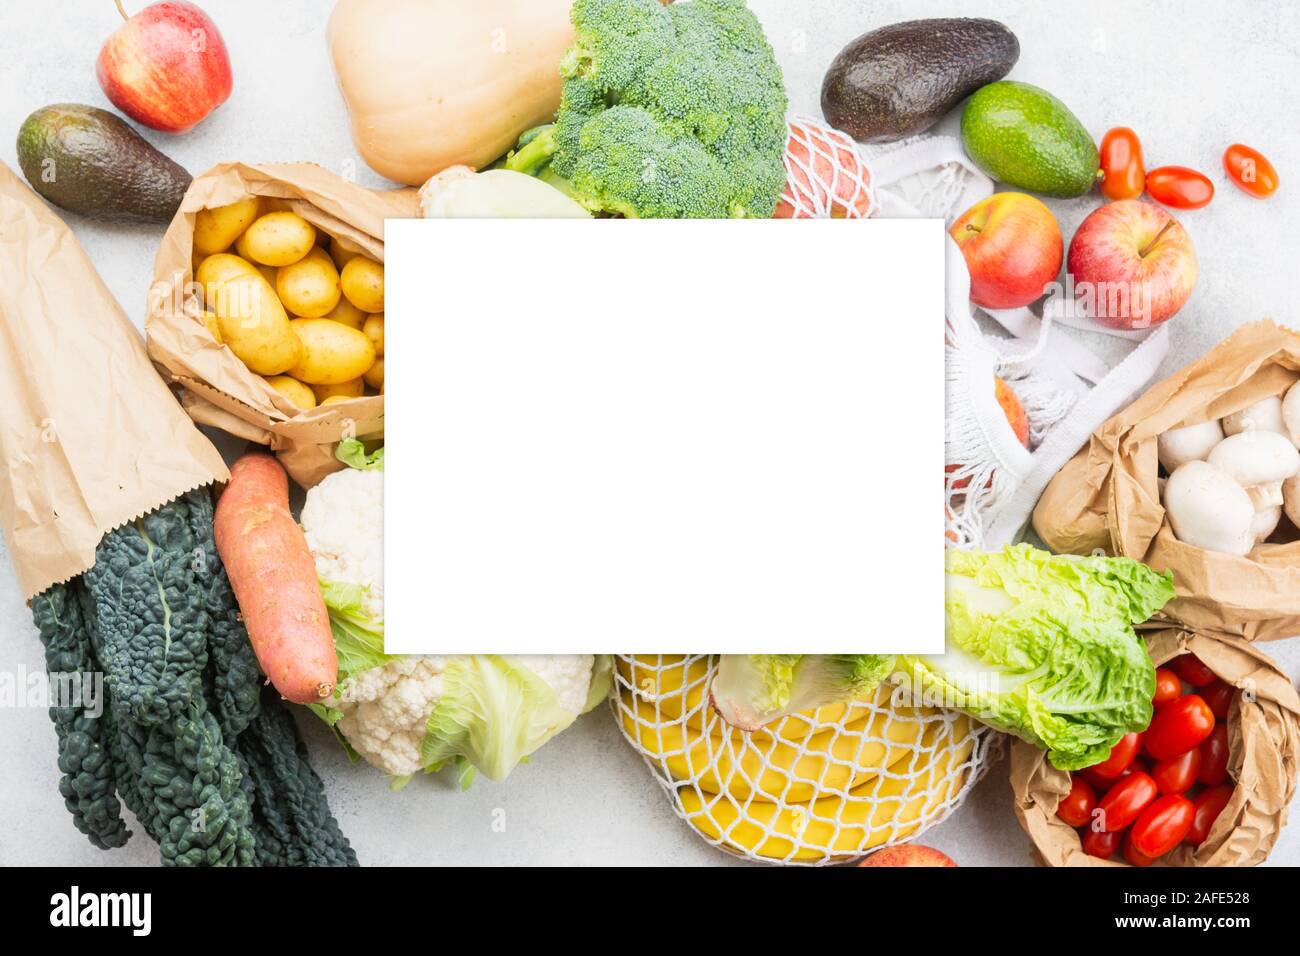 Sortiment an Gemüse Obst in wiederverwendbaren Weiß Mesh, Baumwolle und Papiertüten auf weißen Küche Tabelle, Ansicht von oben, selektive konzentrieren. White Paper Auf, kopieren Sie Platz für Text Stockfoto